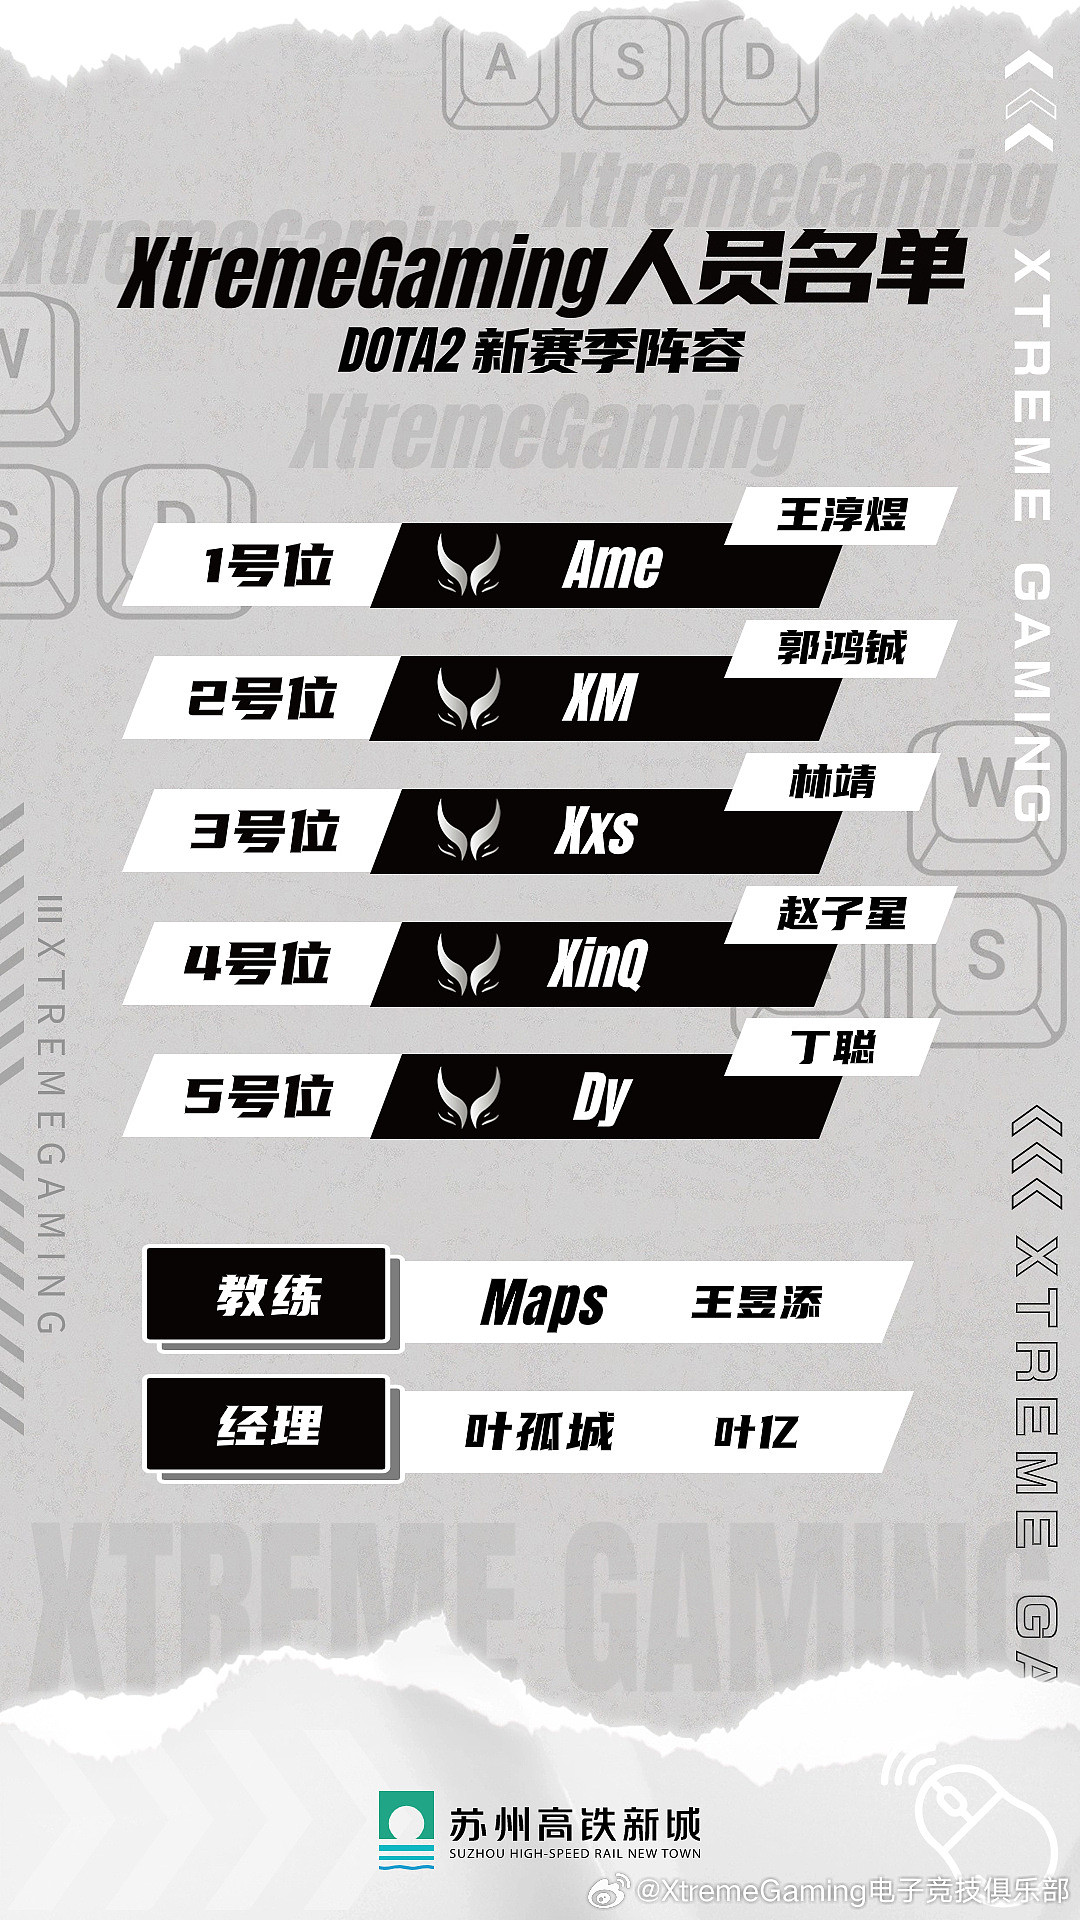 XG战队最终人员名单公布：Ame、Xm、Xxs、XinQ、Dy - 1